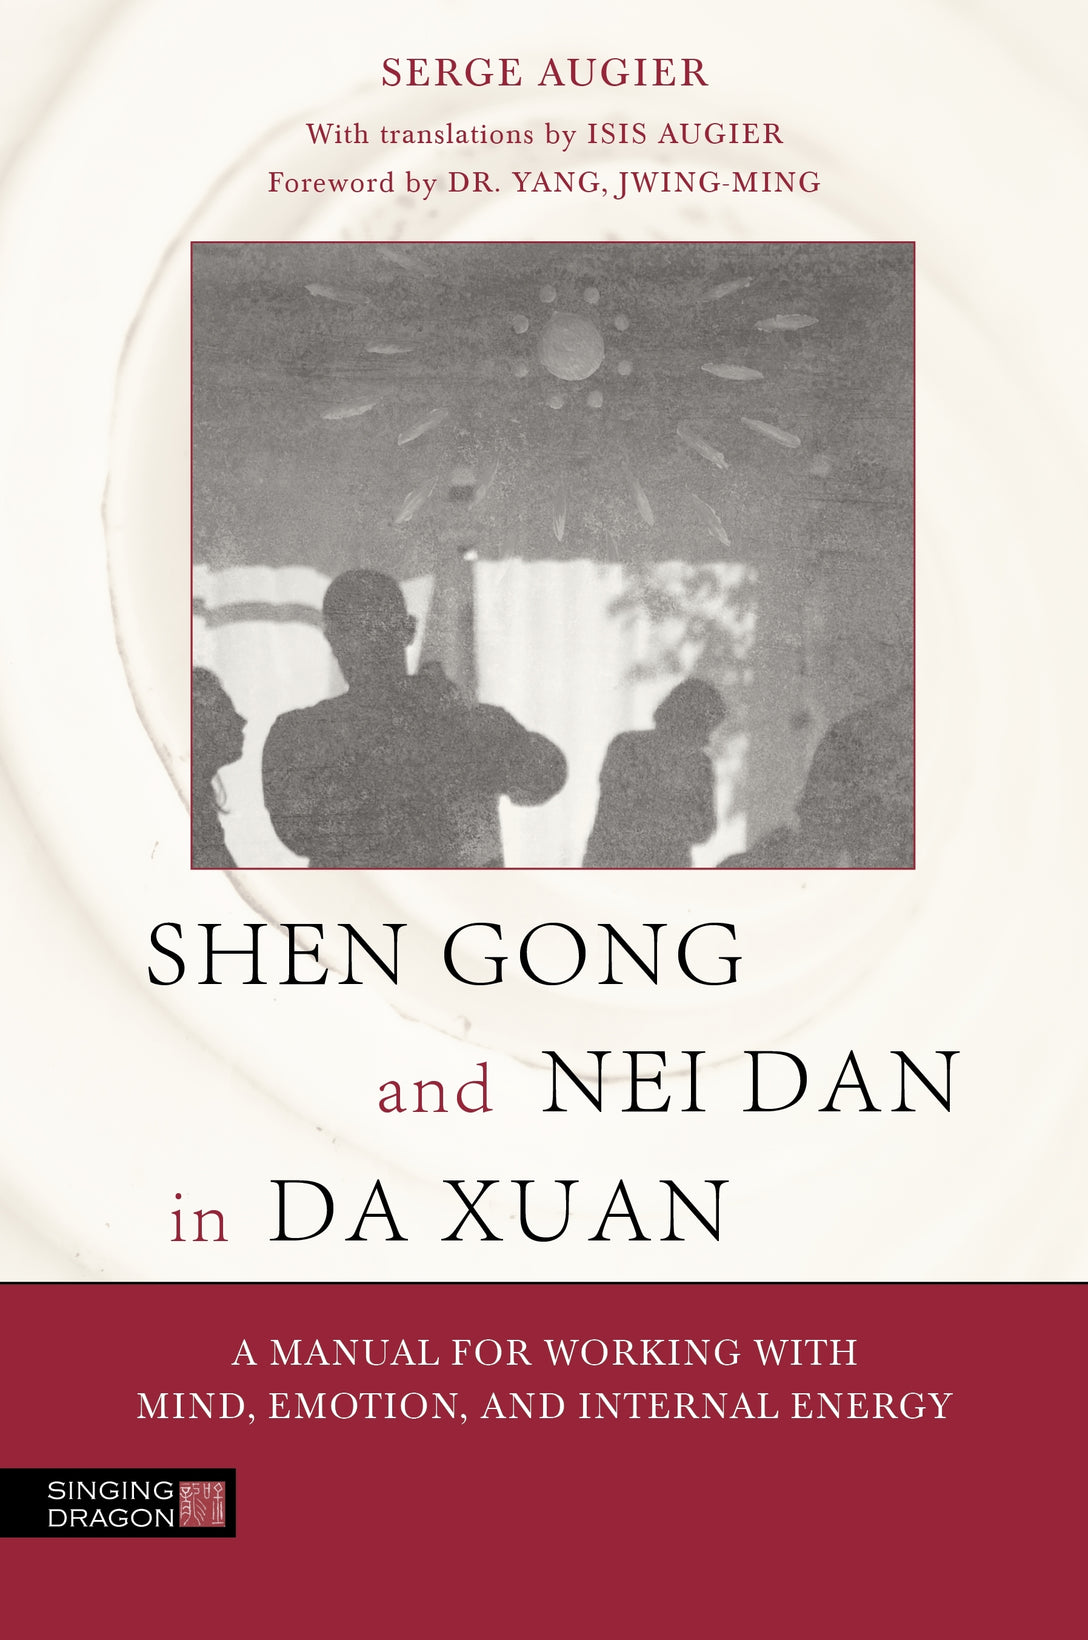 Shen Gong and Nei Dan in Da Xuan by Dr. Yang, Jwing-Ming, Serge Augier